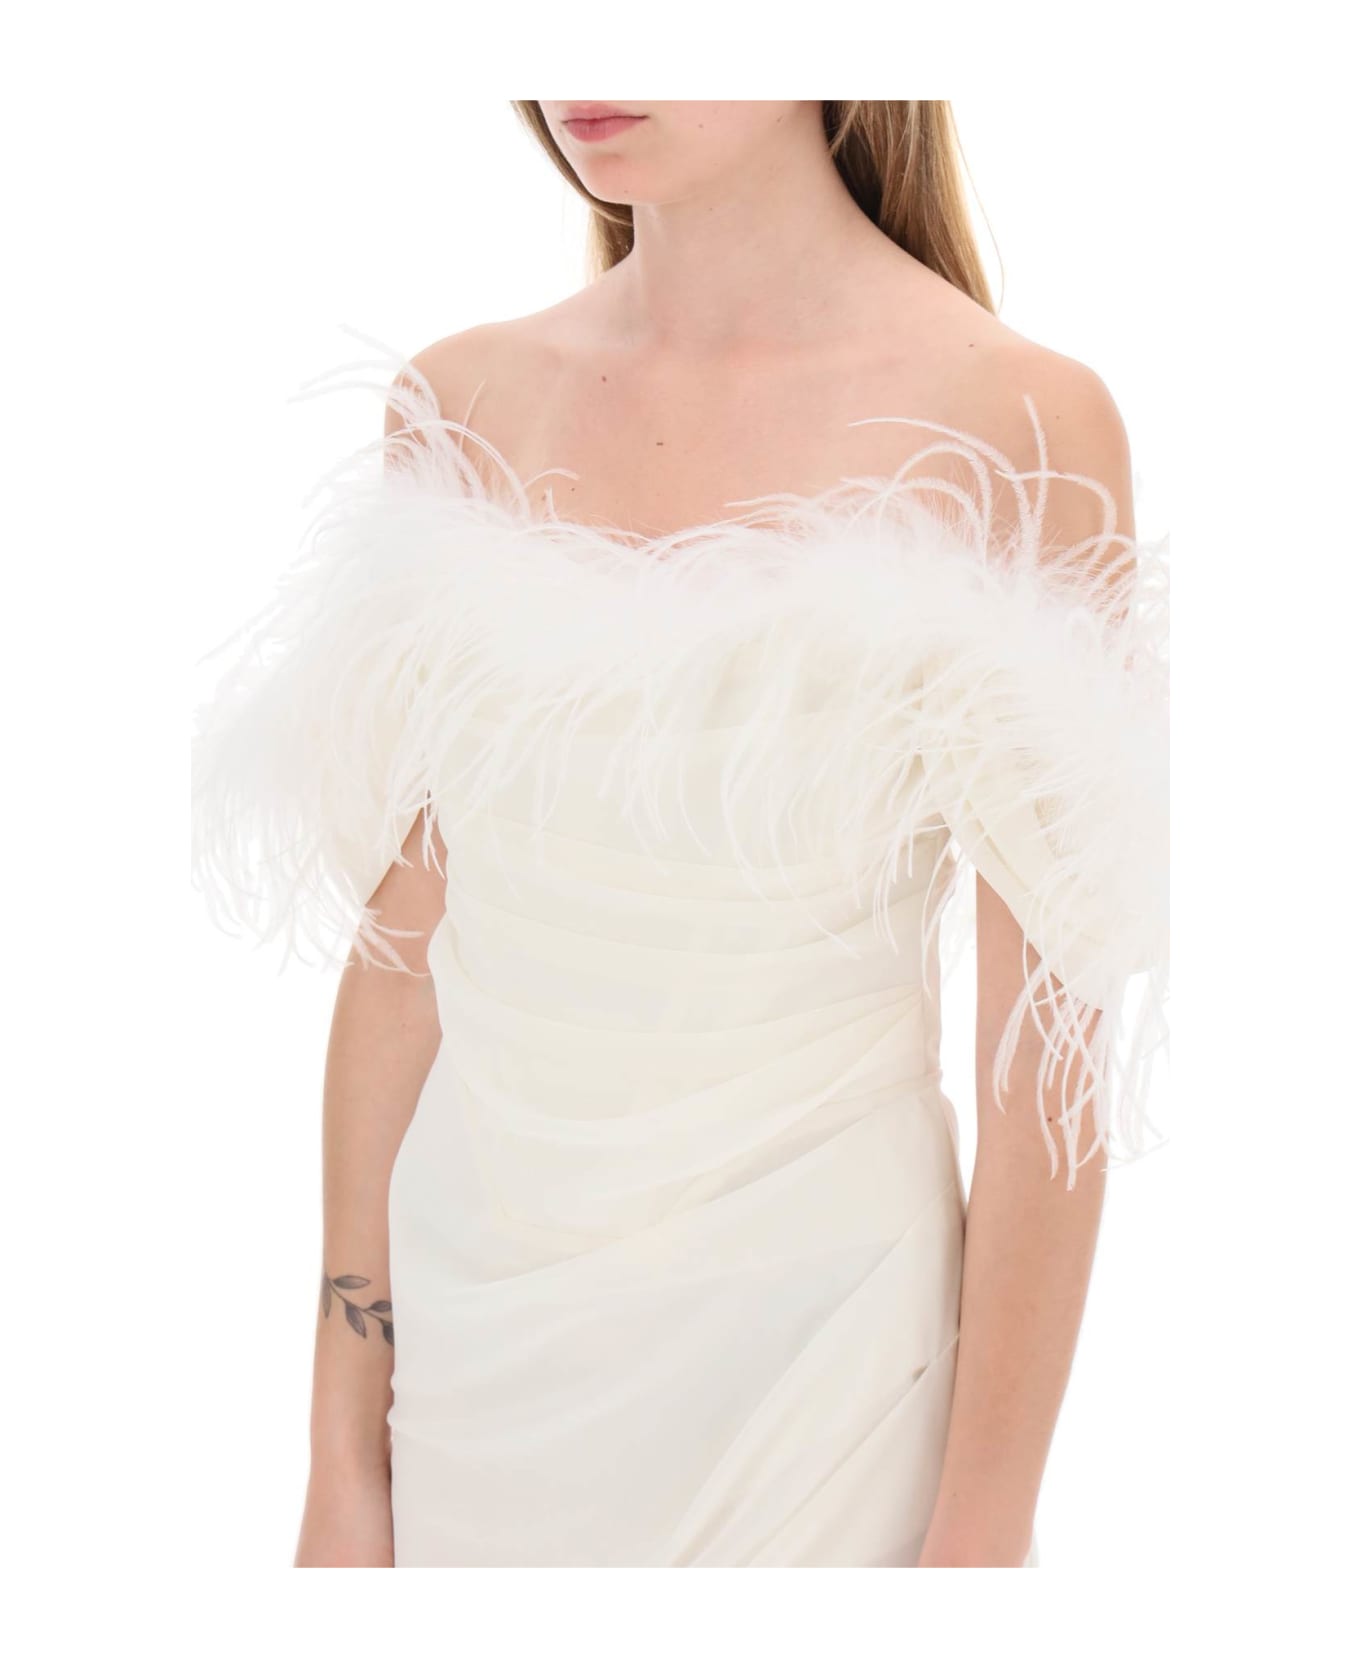 Giuseppe di Morabito Mini Dress In Poly Georgette With Feathers - MILK WHITE (White)